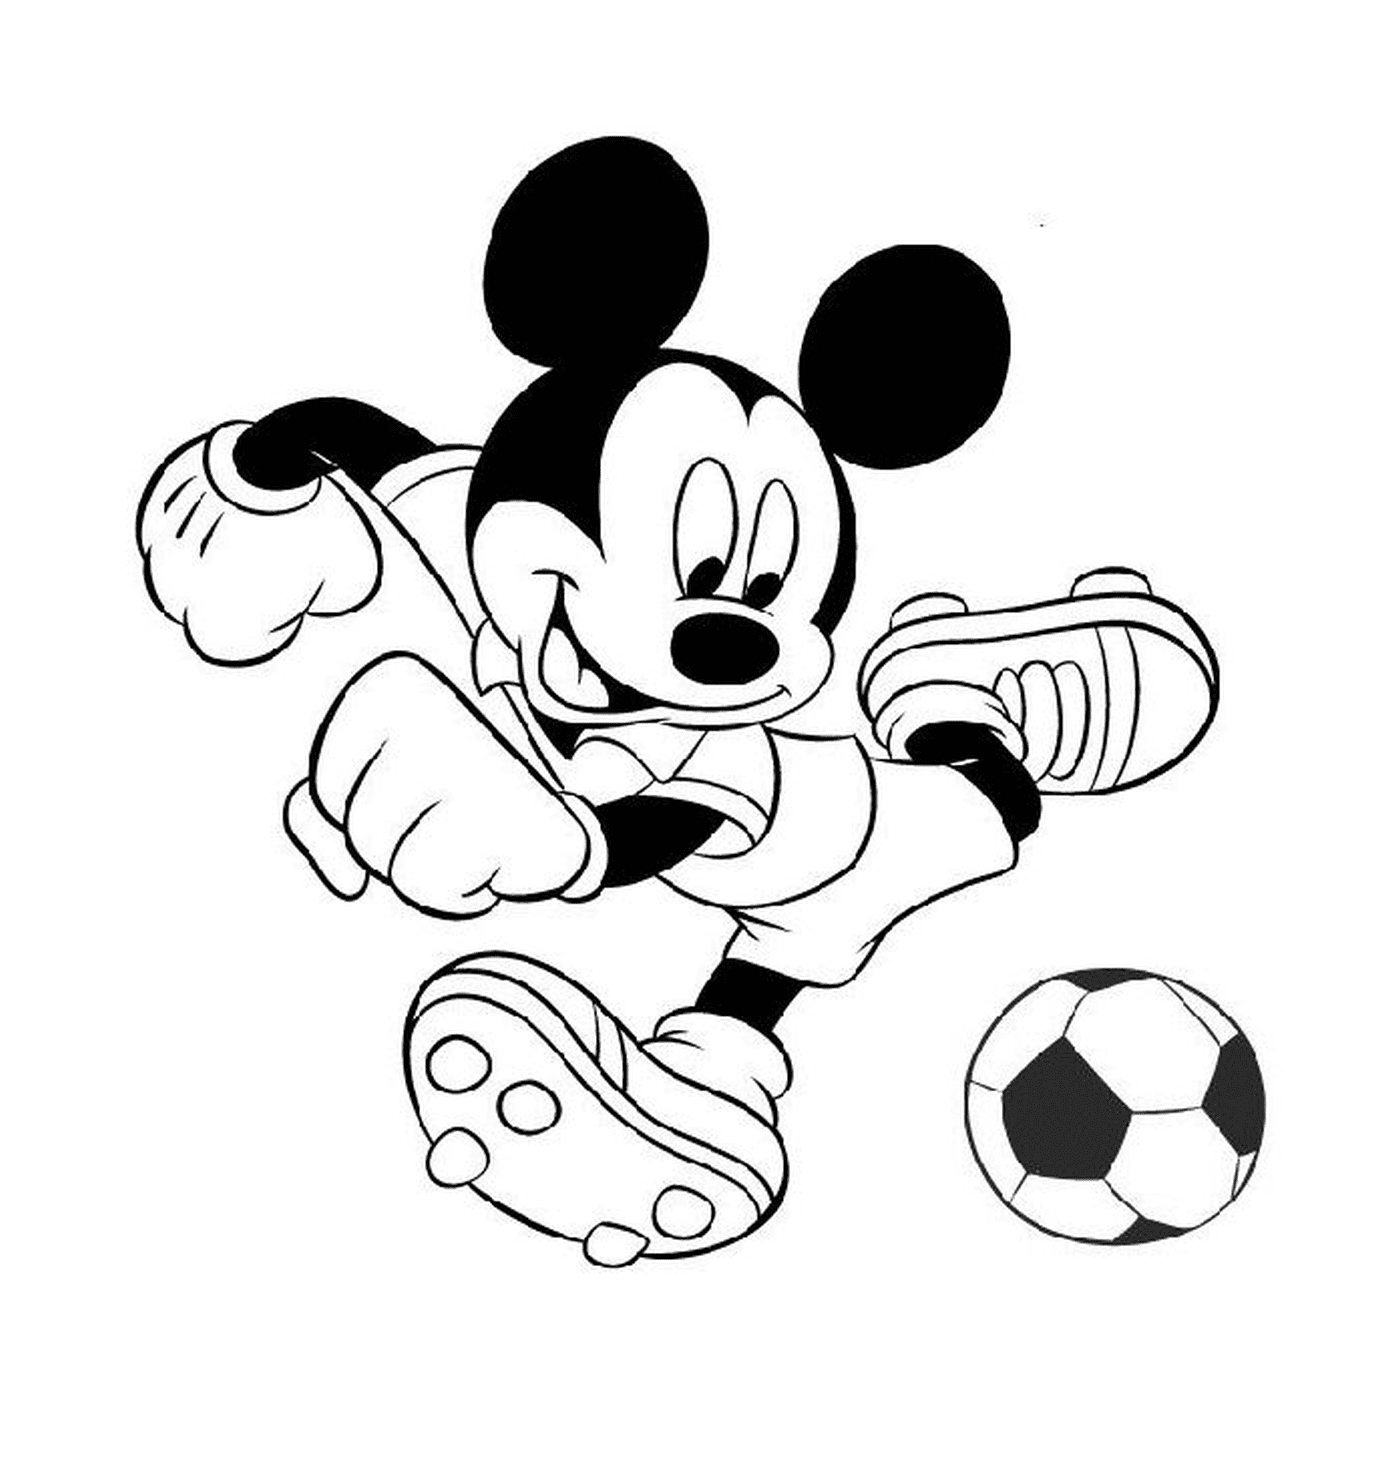  Mickey Mouse juega al fútbol 